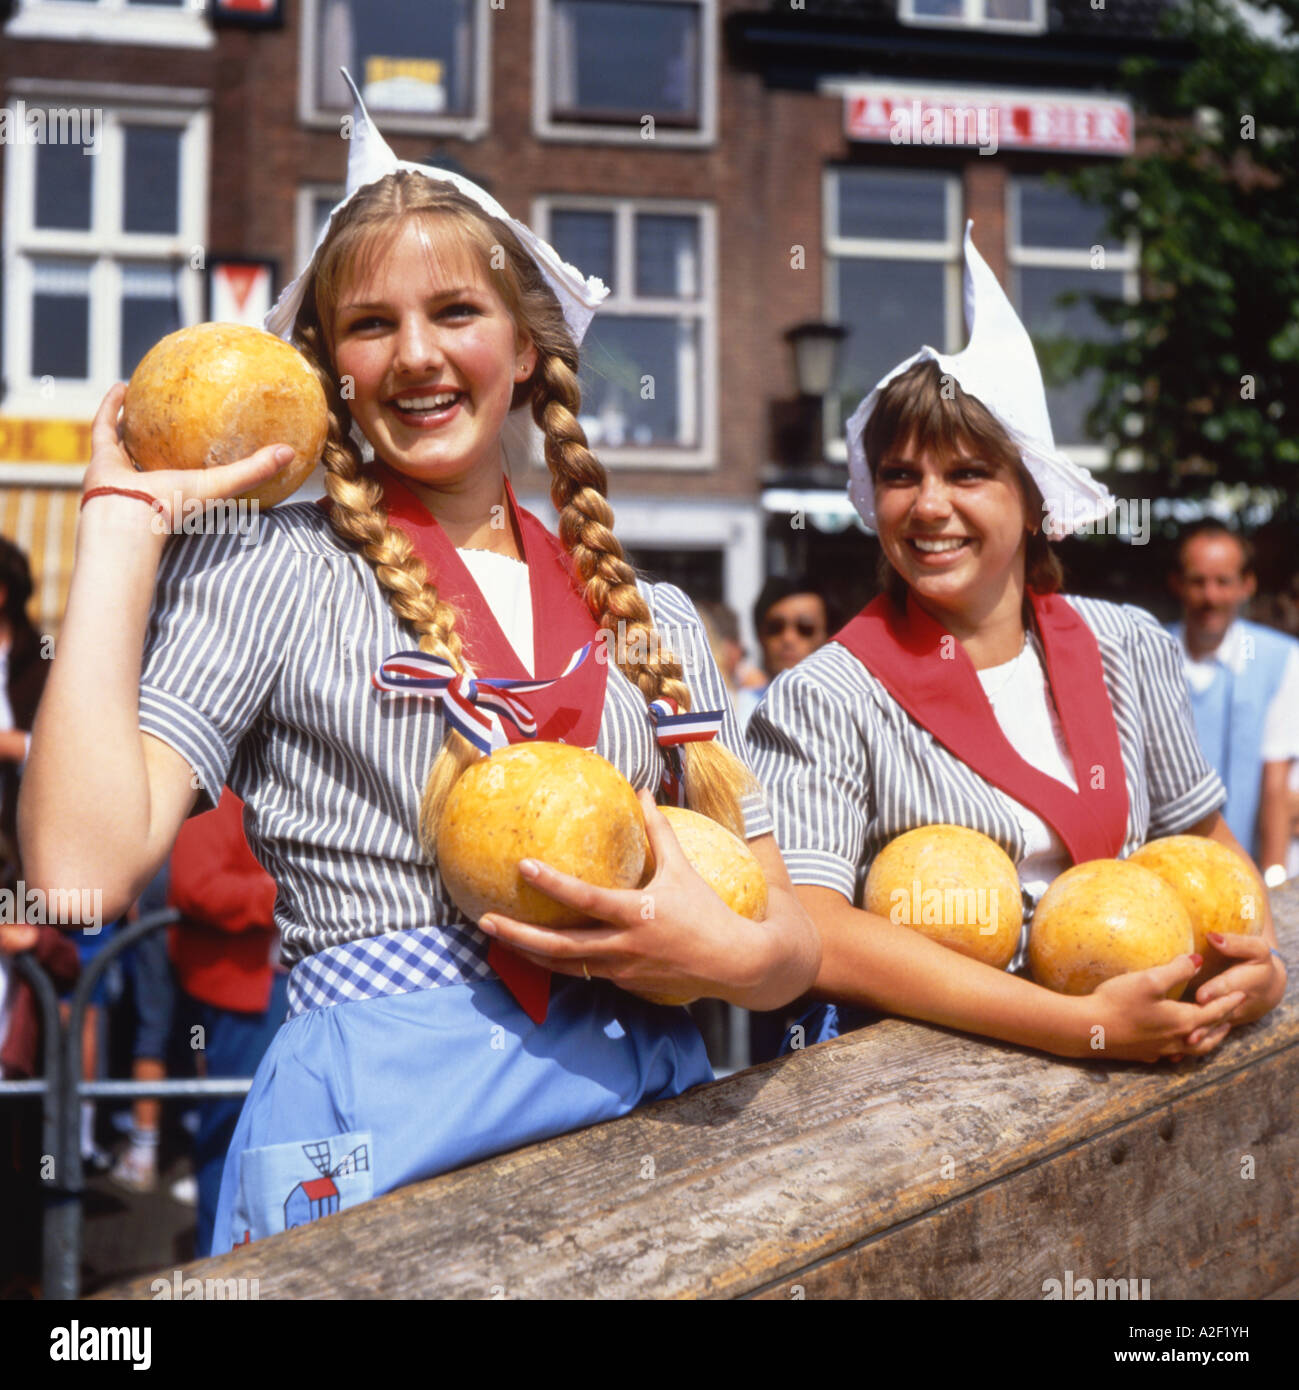 Zwei Niederländische Mädchen In Traditioneller Kleidung Verkaufen Käse